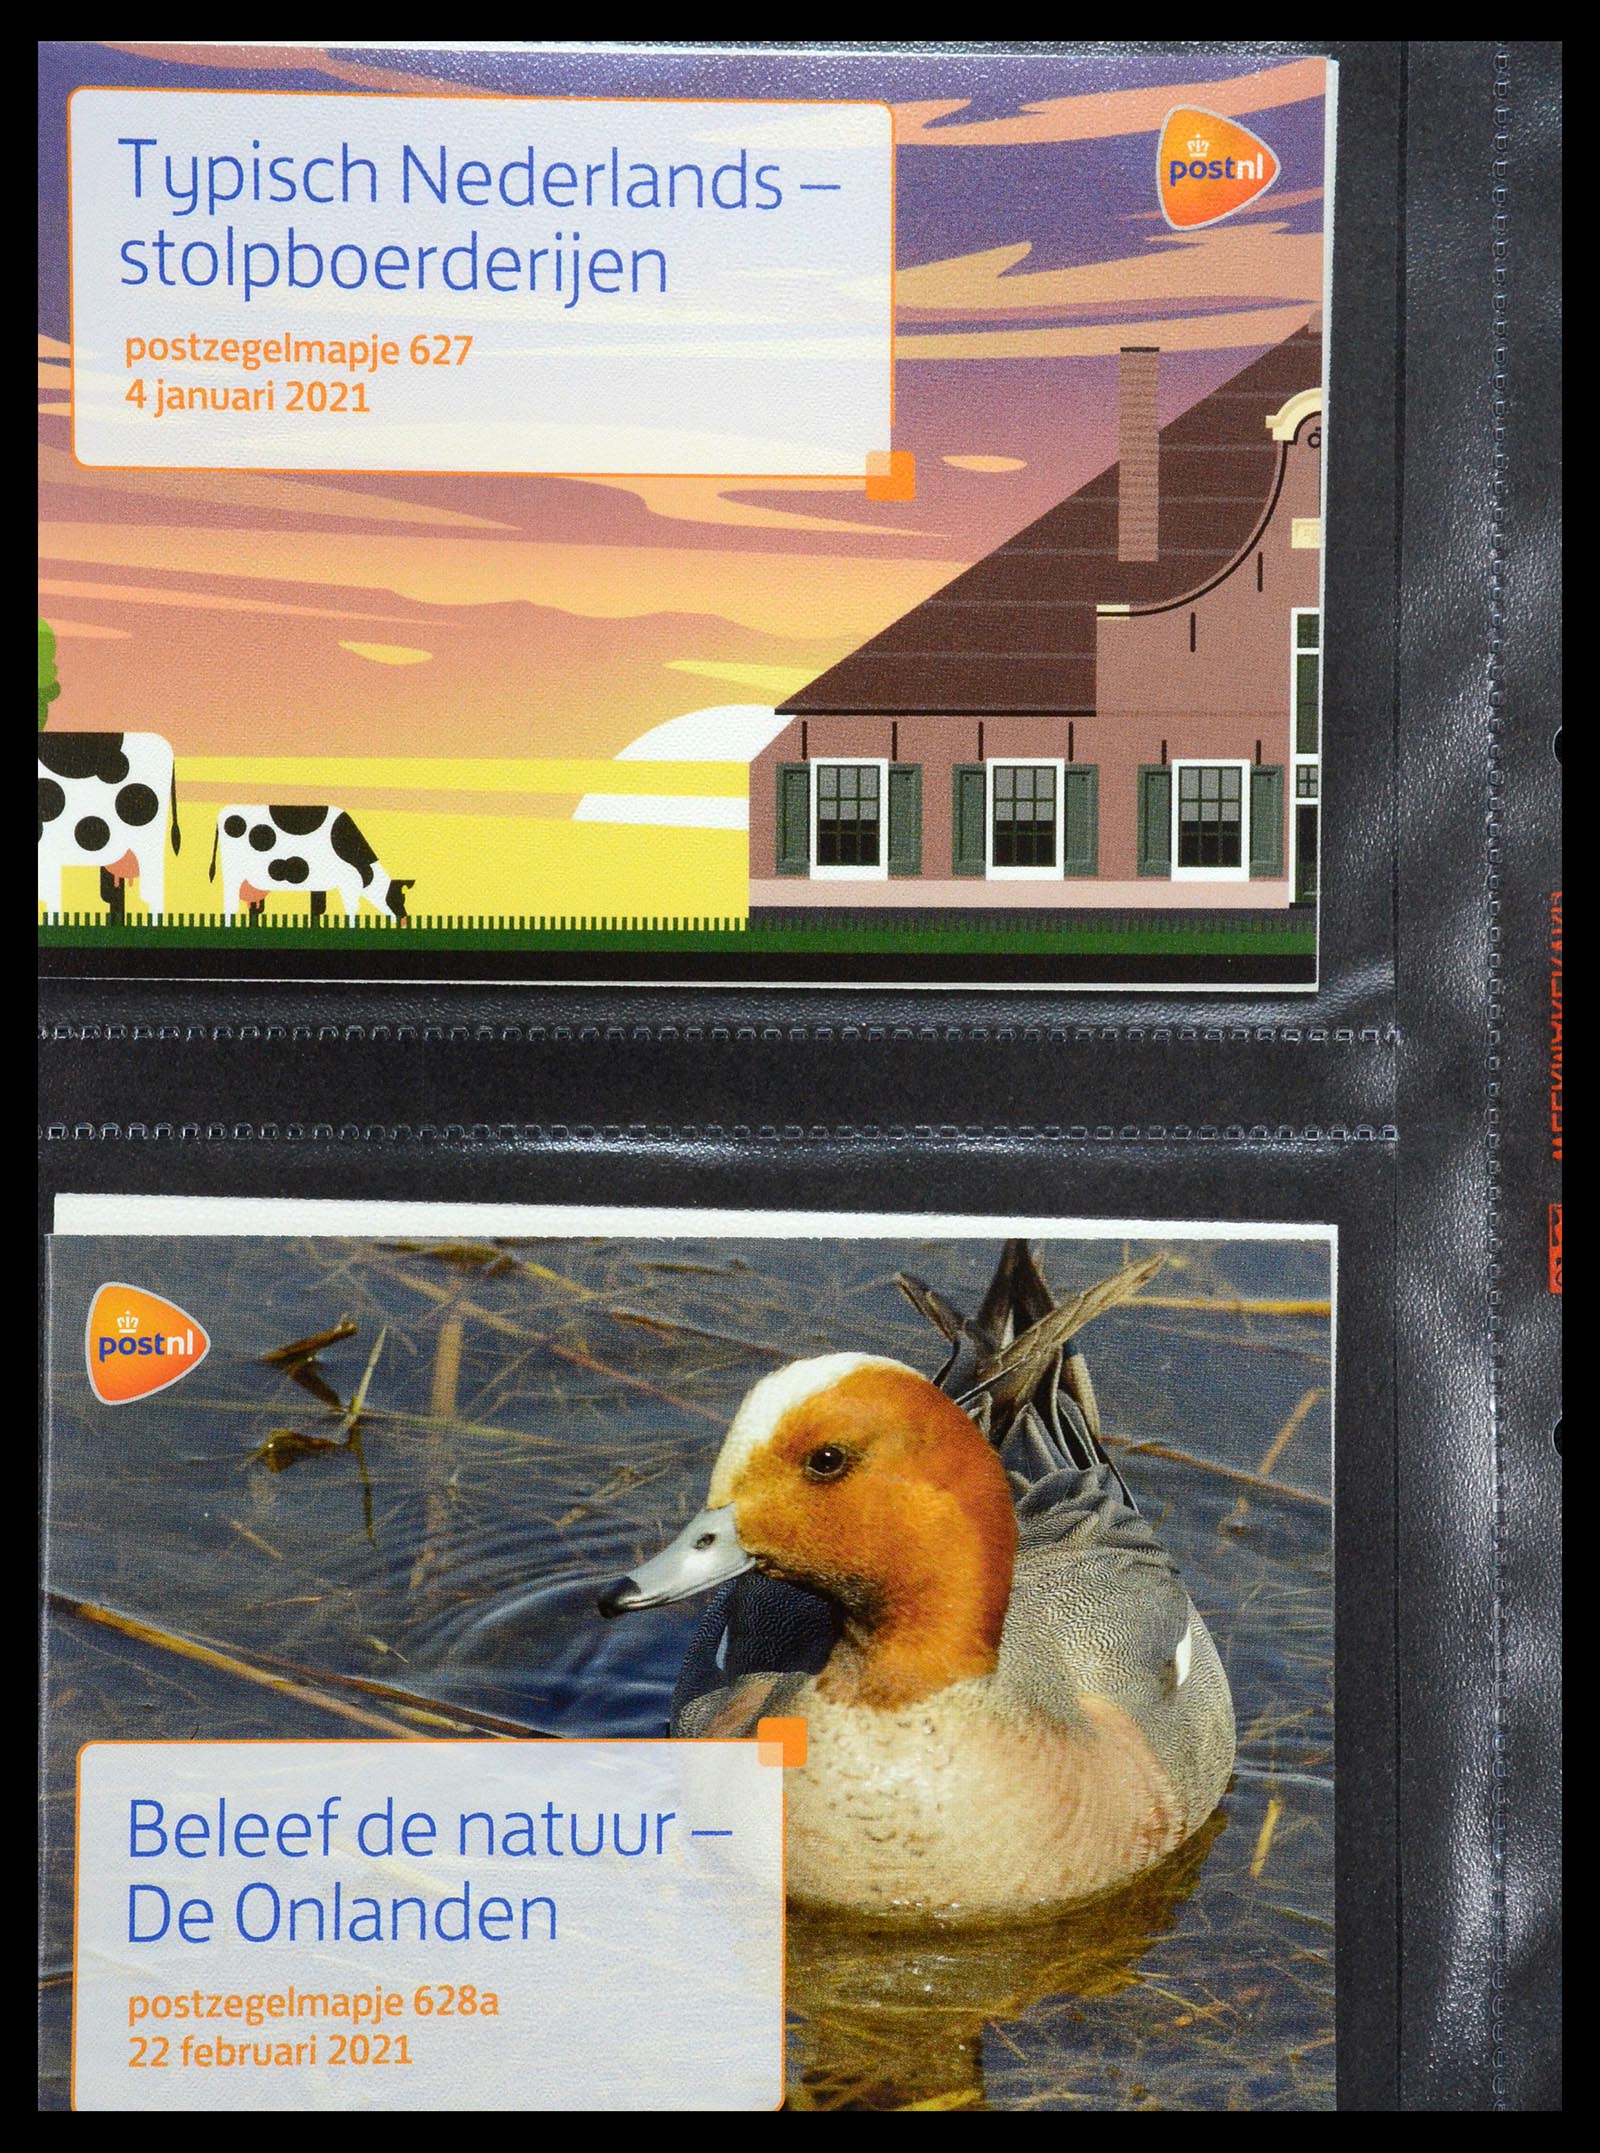 35144 380 - Stamp Collection 35144 Netherlands PTT presentation packs 1982-2021!